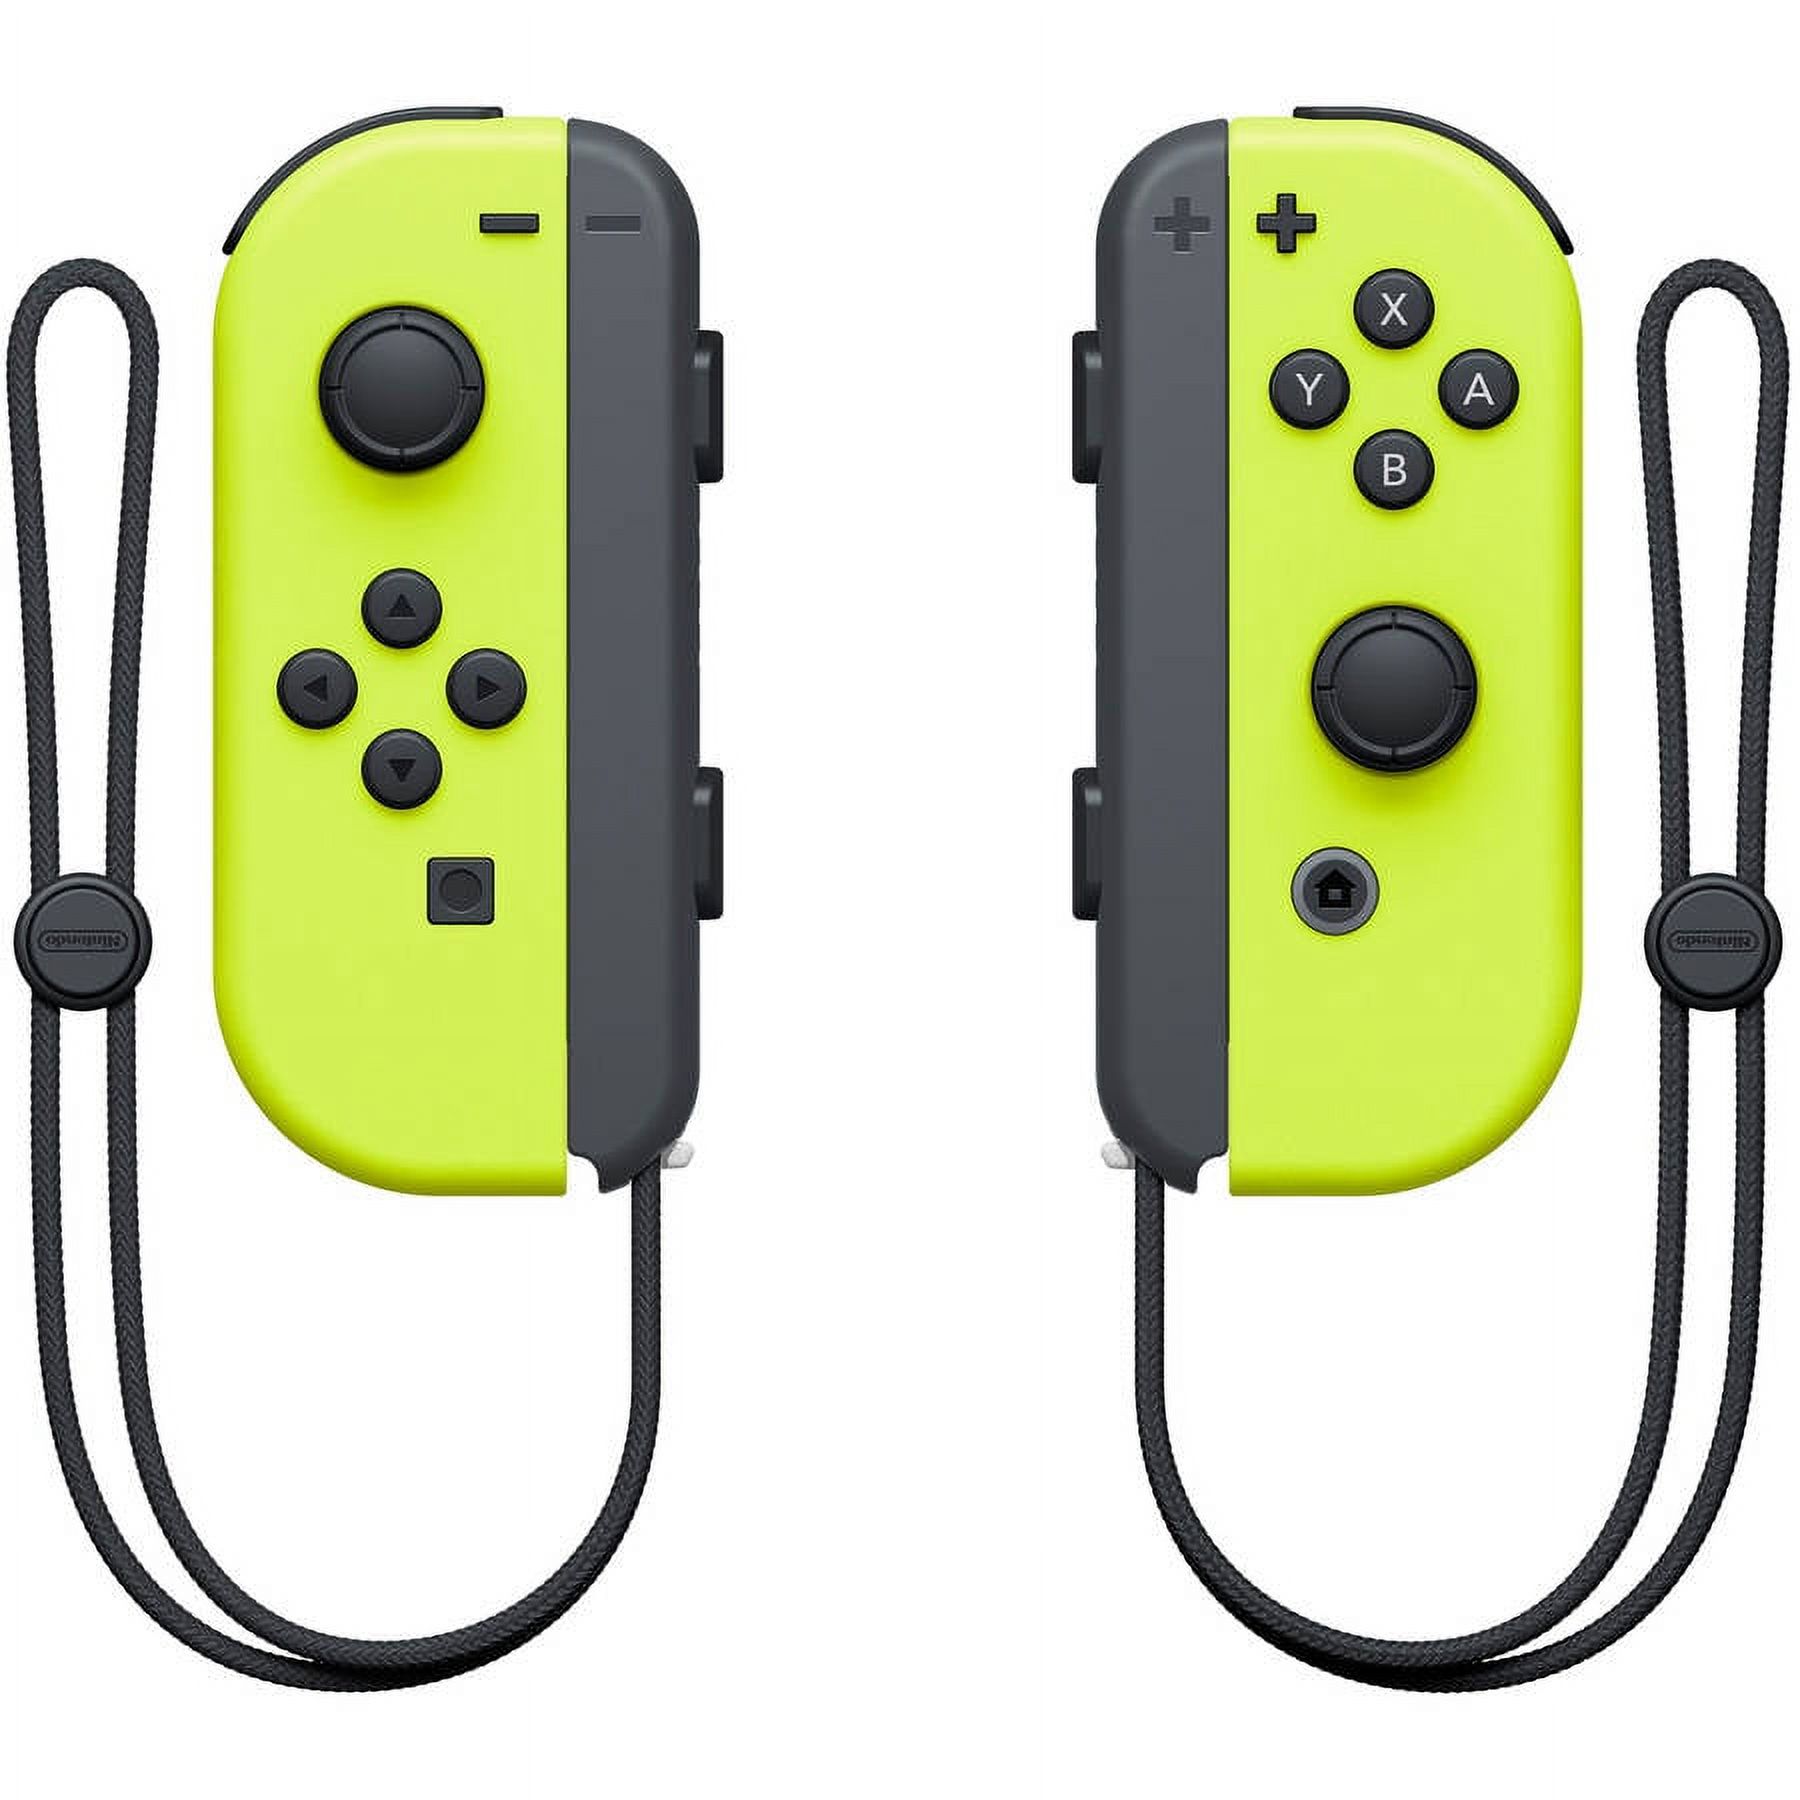 Nintendo Switch Joy-Con Pair, Neon Yellow - image 2 of 4